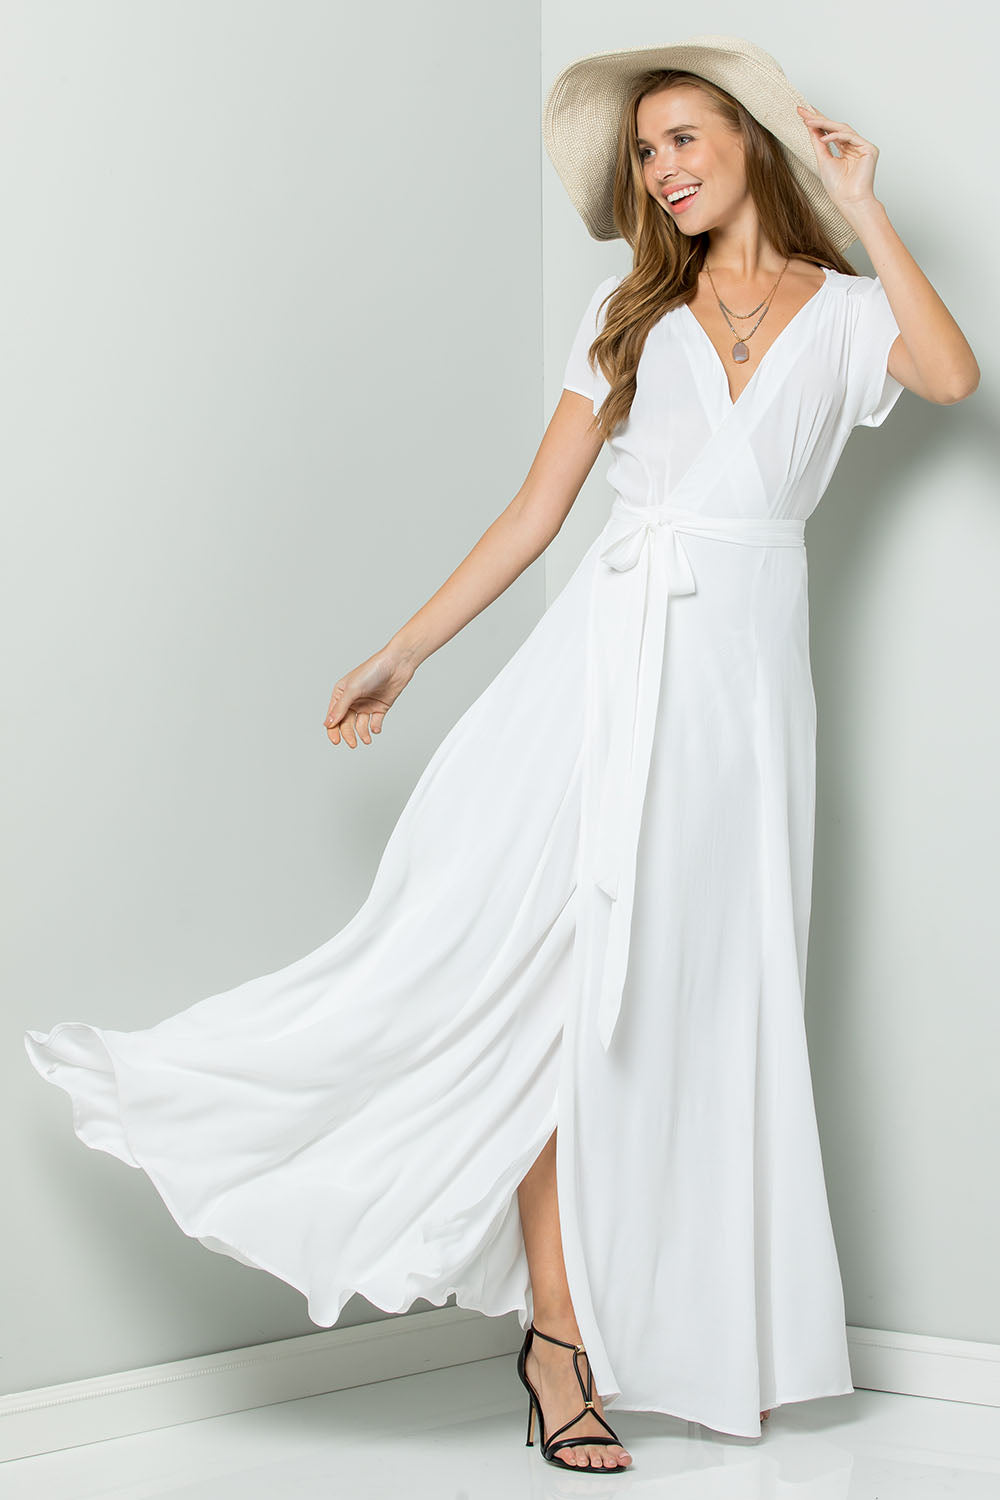 flowy white dress maxi